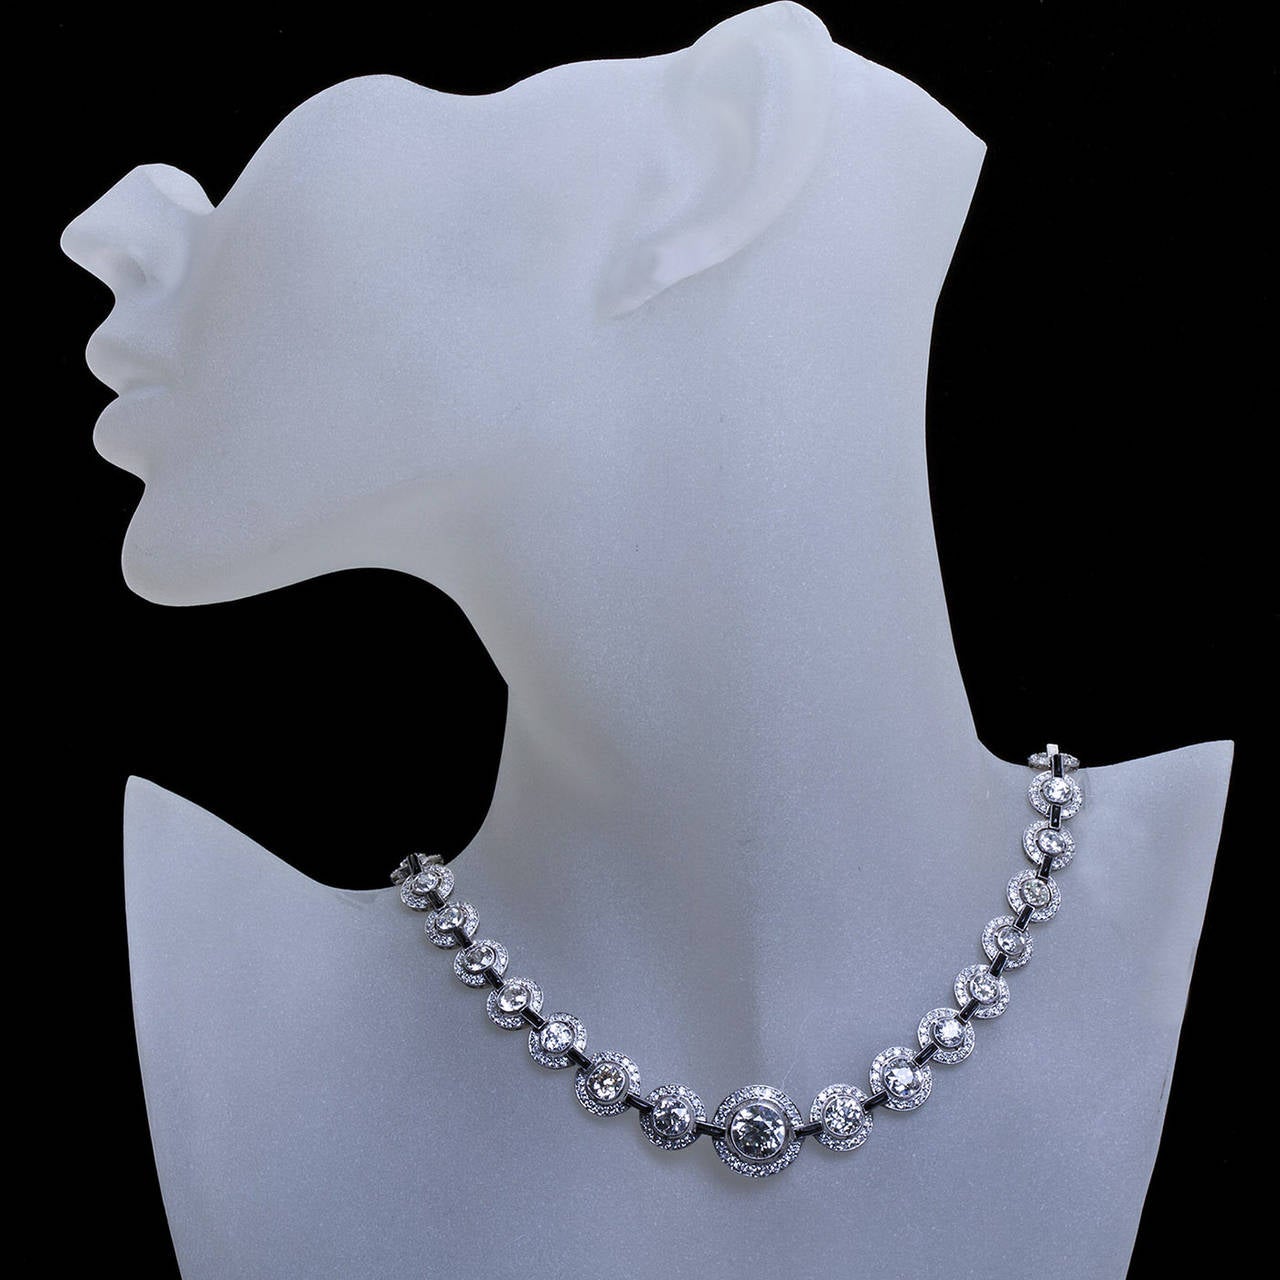 diamond necklace and bracelet set